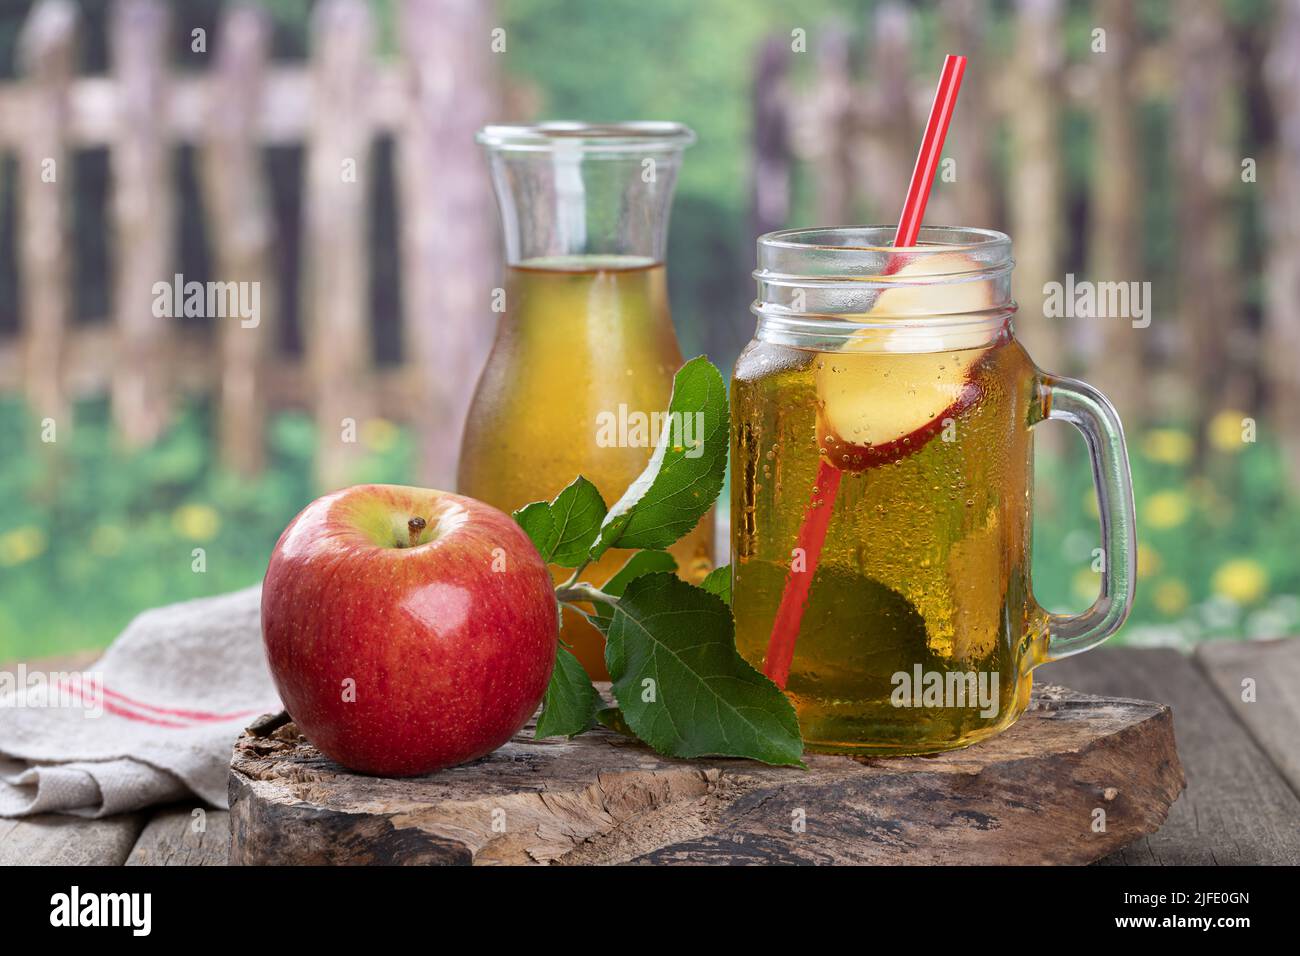 Vaso de jugo de manzana y manzana roja sobre un viejo bloque de madera con fondo rural Foto de stock